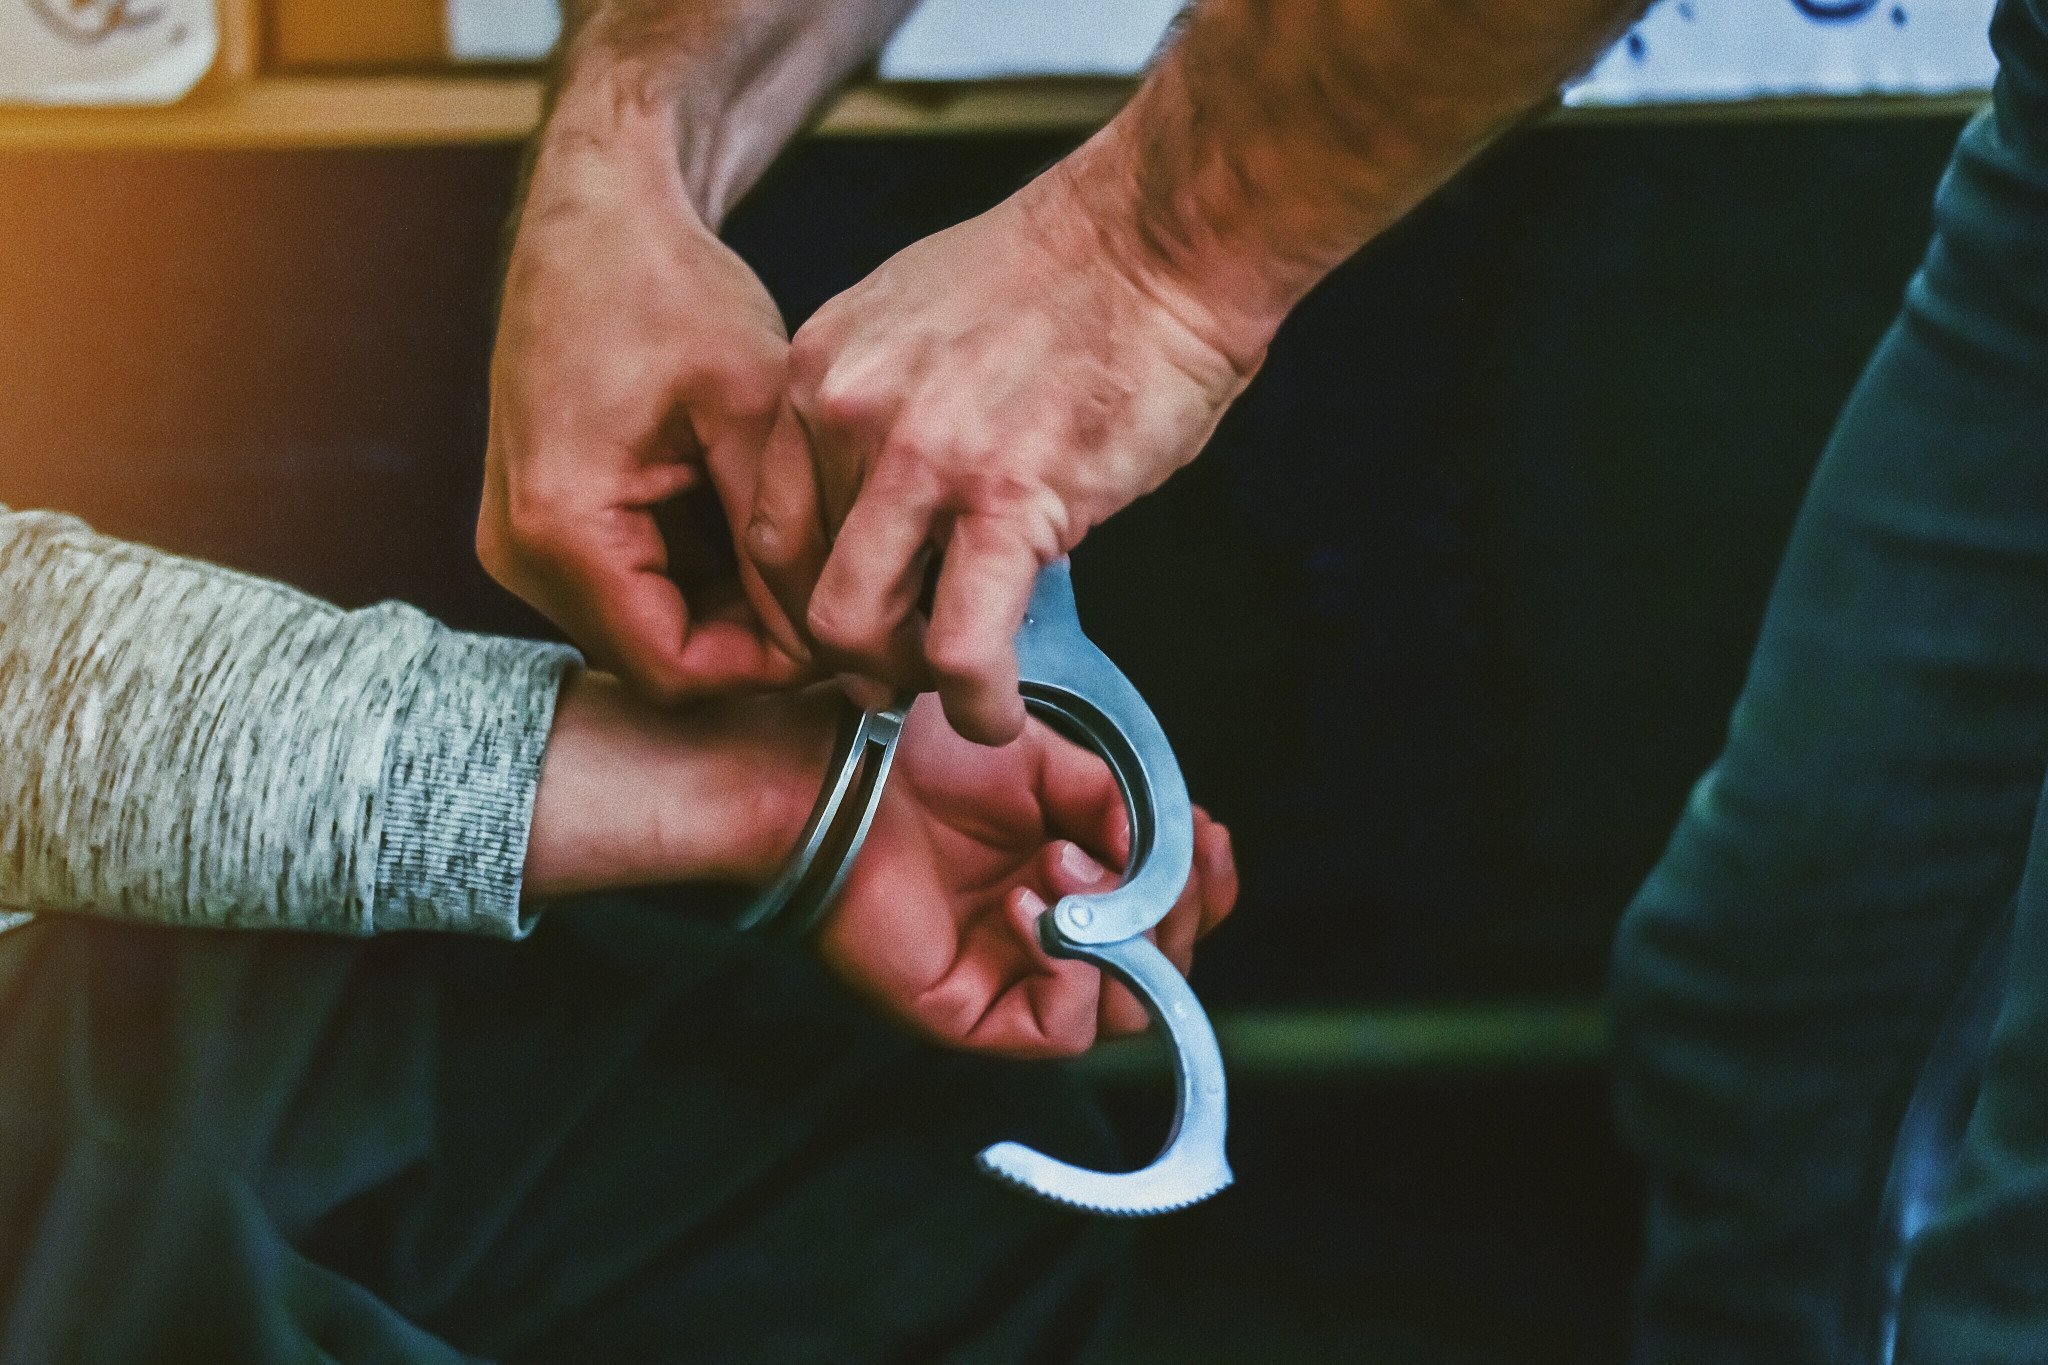 

В Орске арестовали обвиняемого по делу о массовом отравлении алкоголем 

